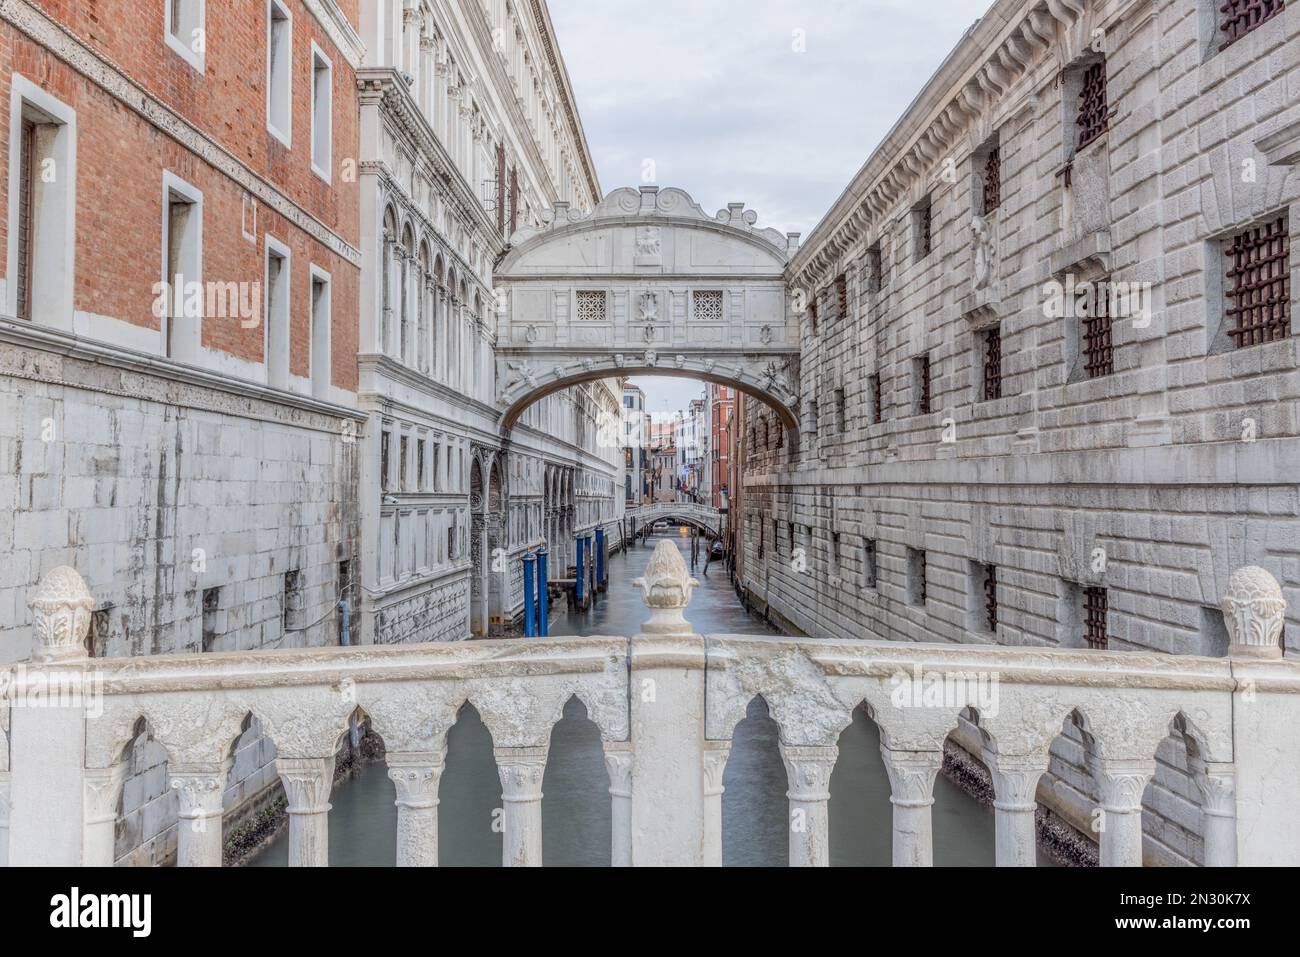 Venecia, Italia. Ciudad europea de Venecia, destino turístico famoso por los canales, góndolas e historia, puente de suspiros mirando sobre el canal Foto de stock